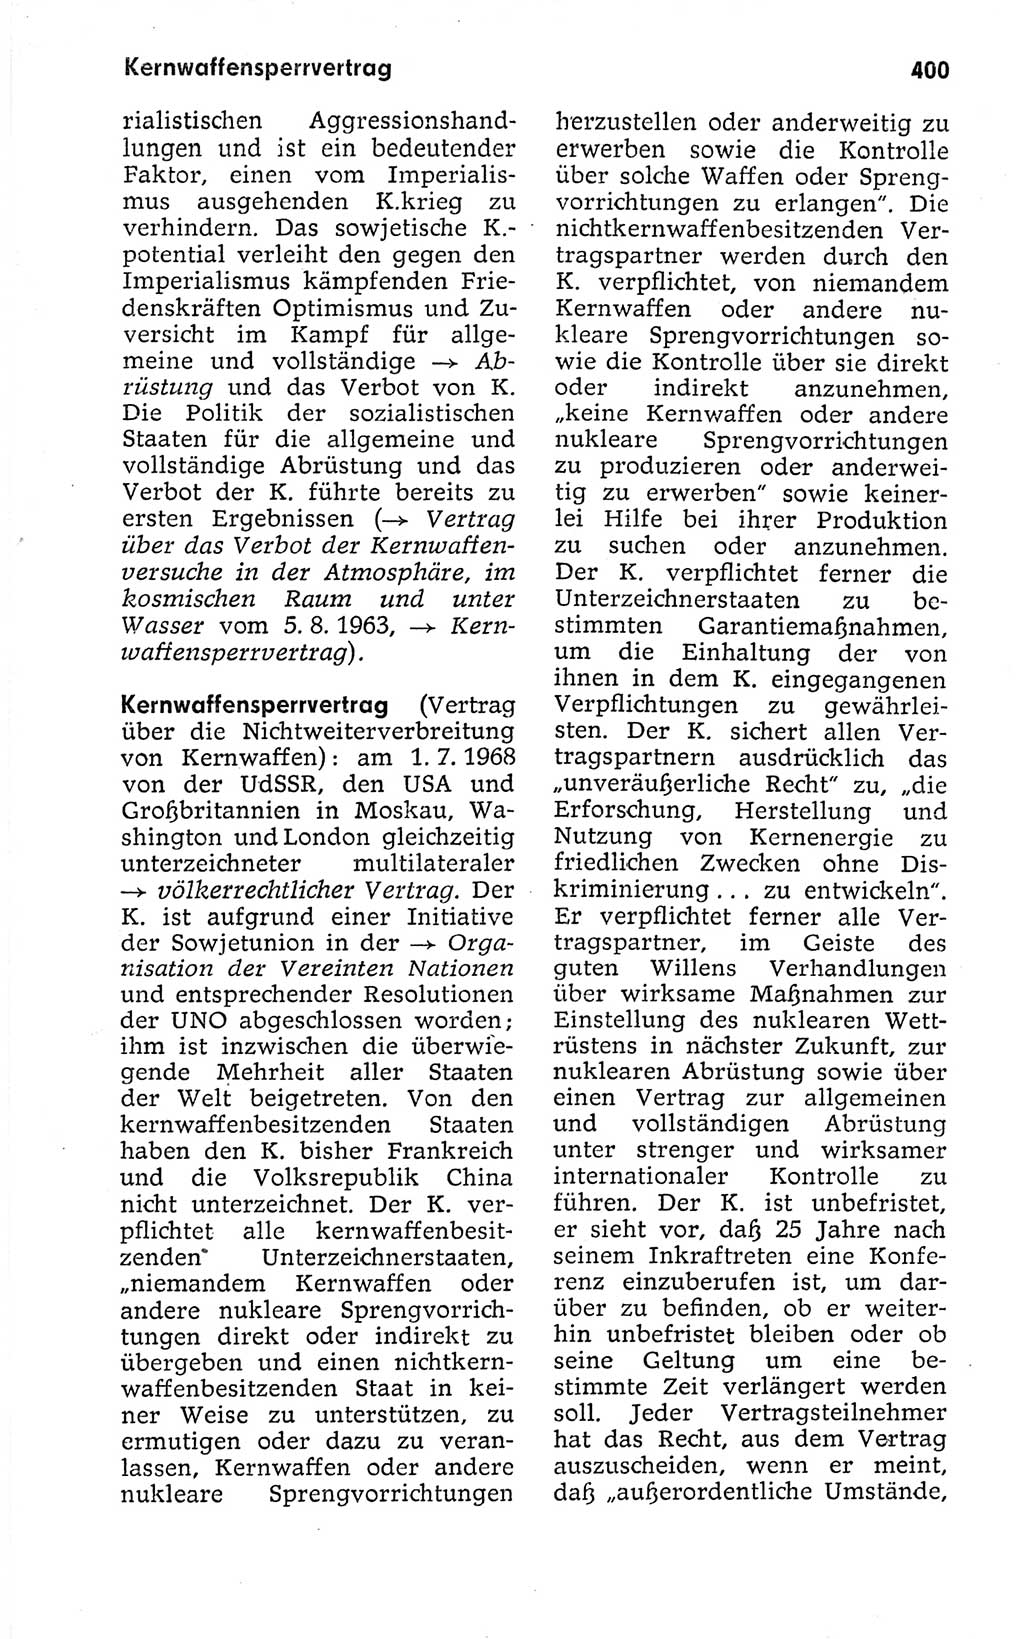 Kleines politisches Wörterbuch [Deutsche Demokratische Republik (DDR)] 1973, Seite 400 (Kl. pol. Wb. DDR 1973, S. 400)